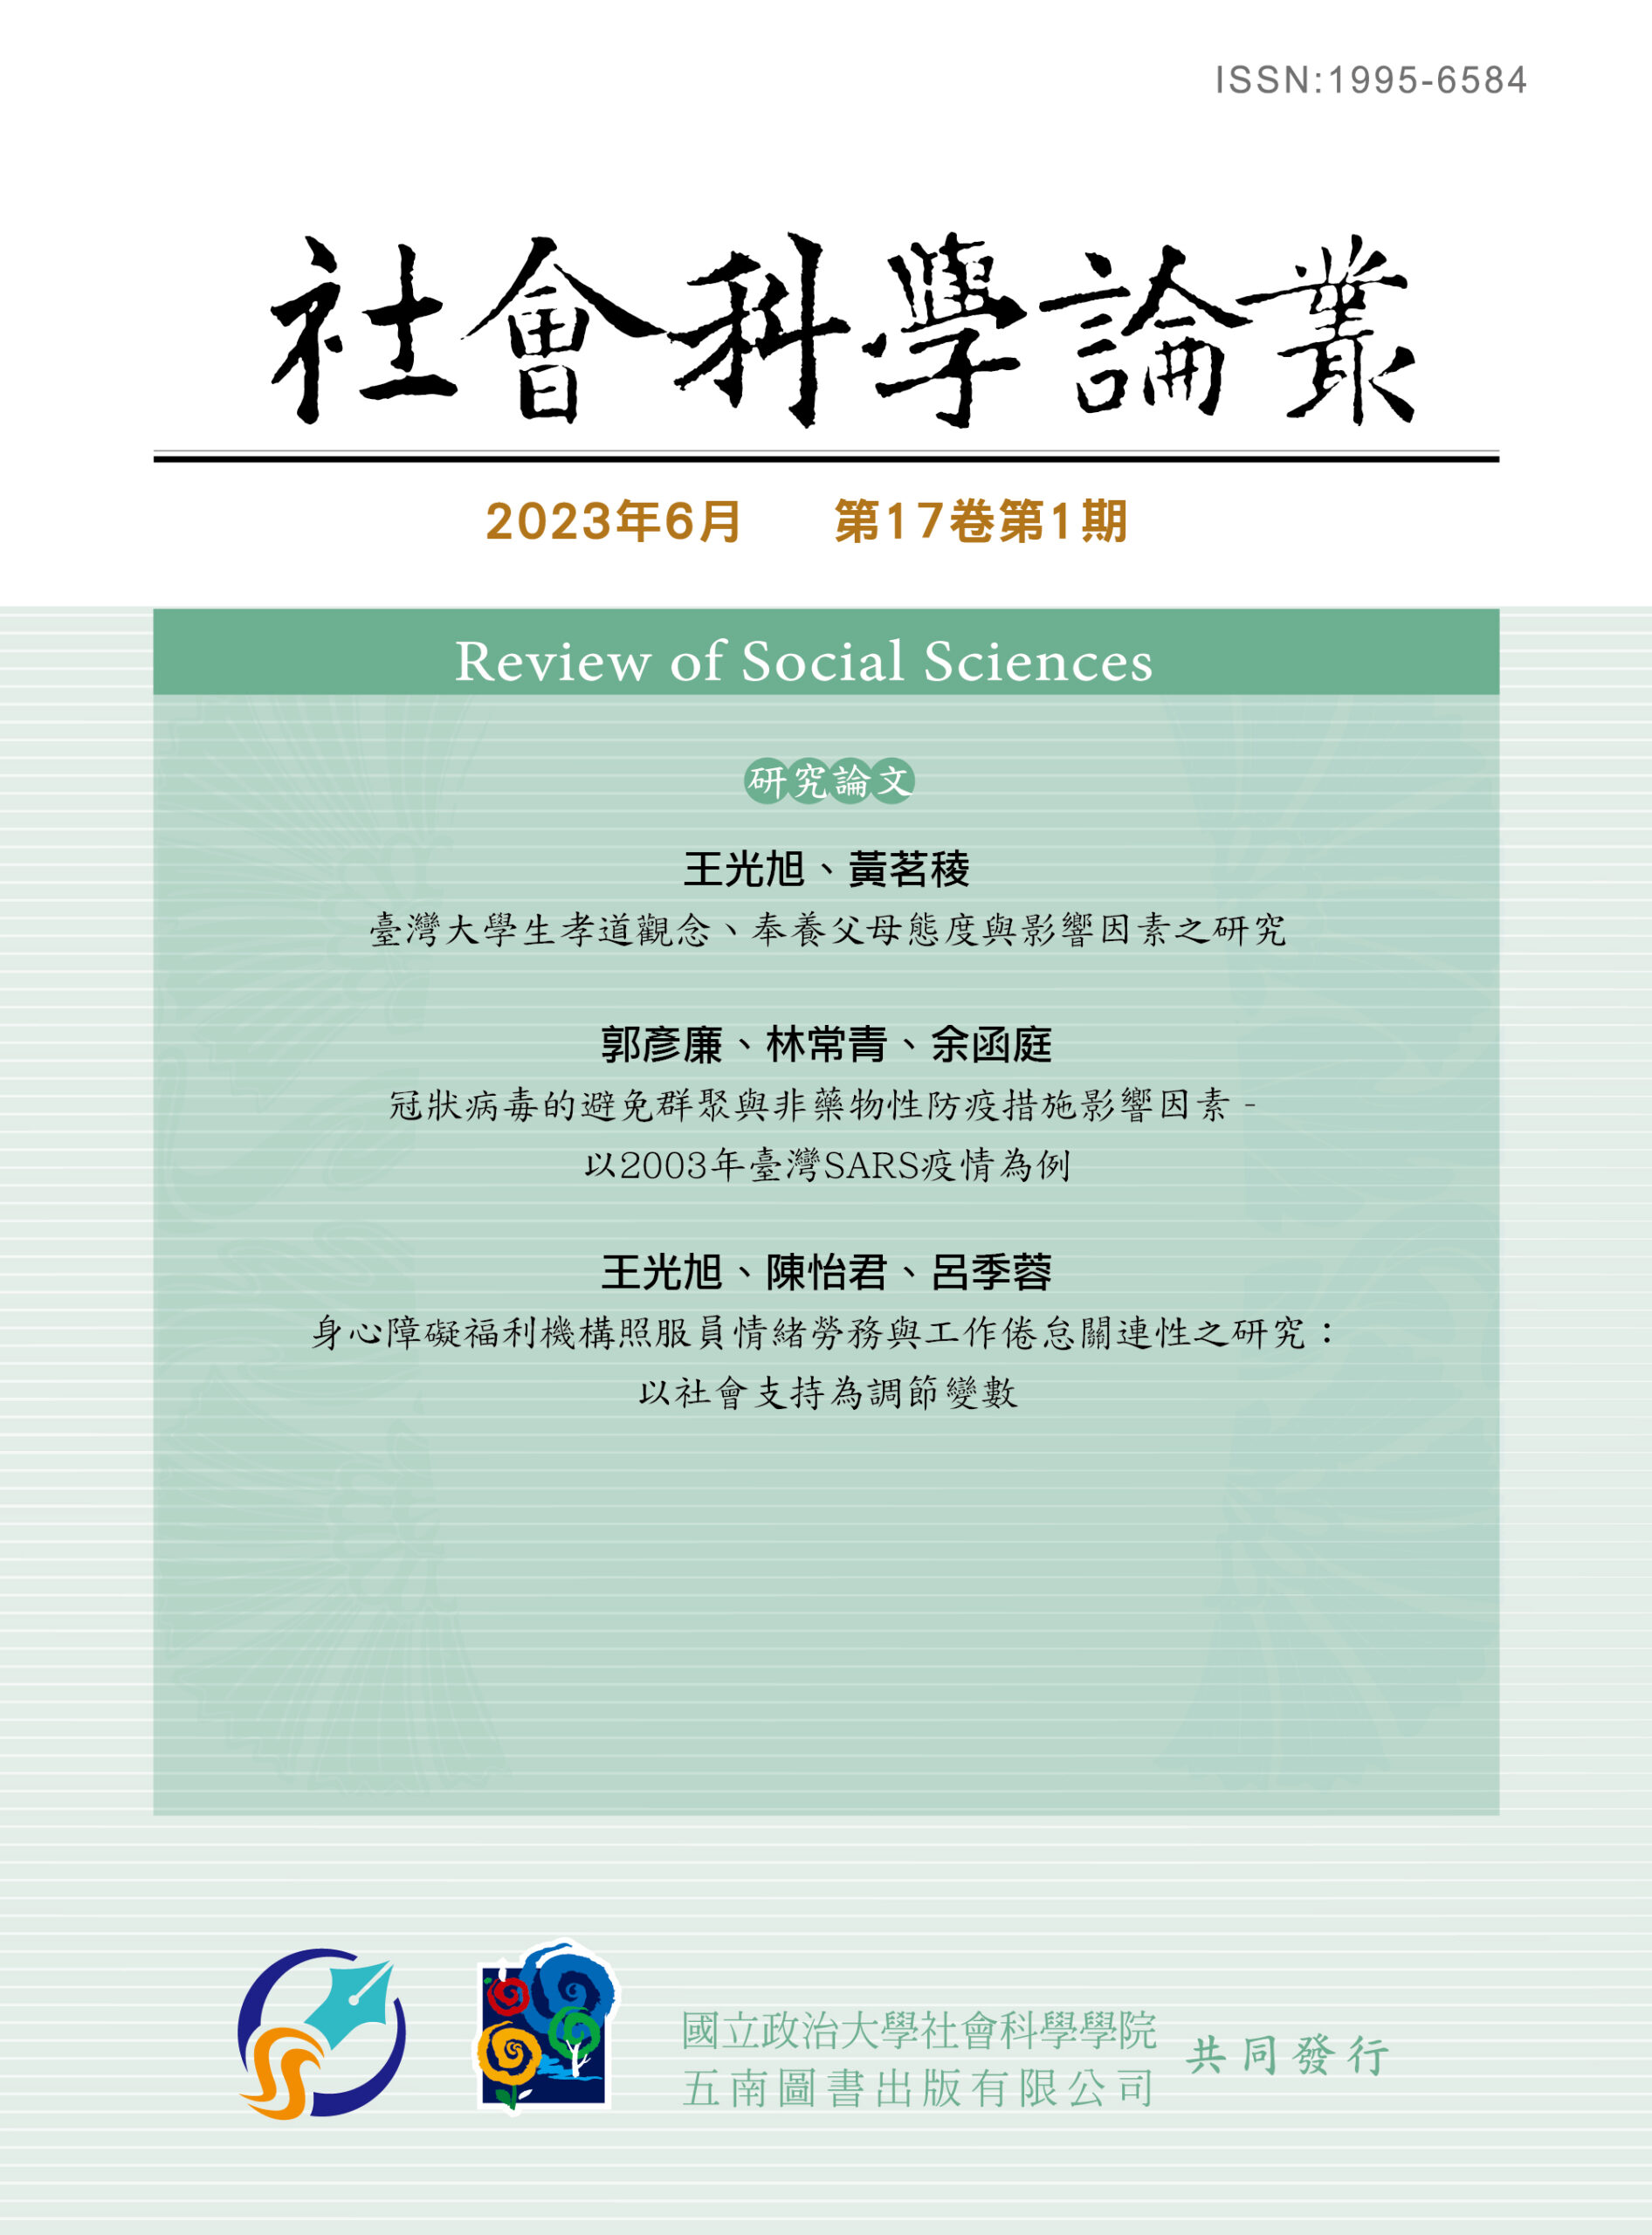 社會科學論叢- 國立政治大學社會科學學院